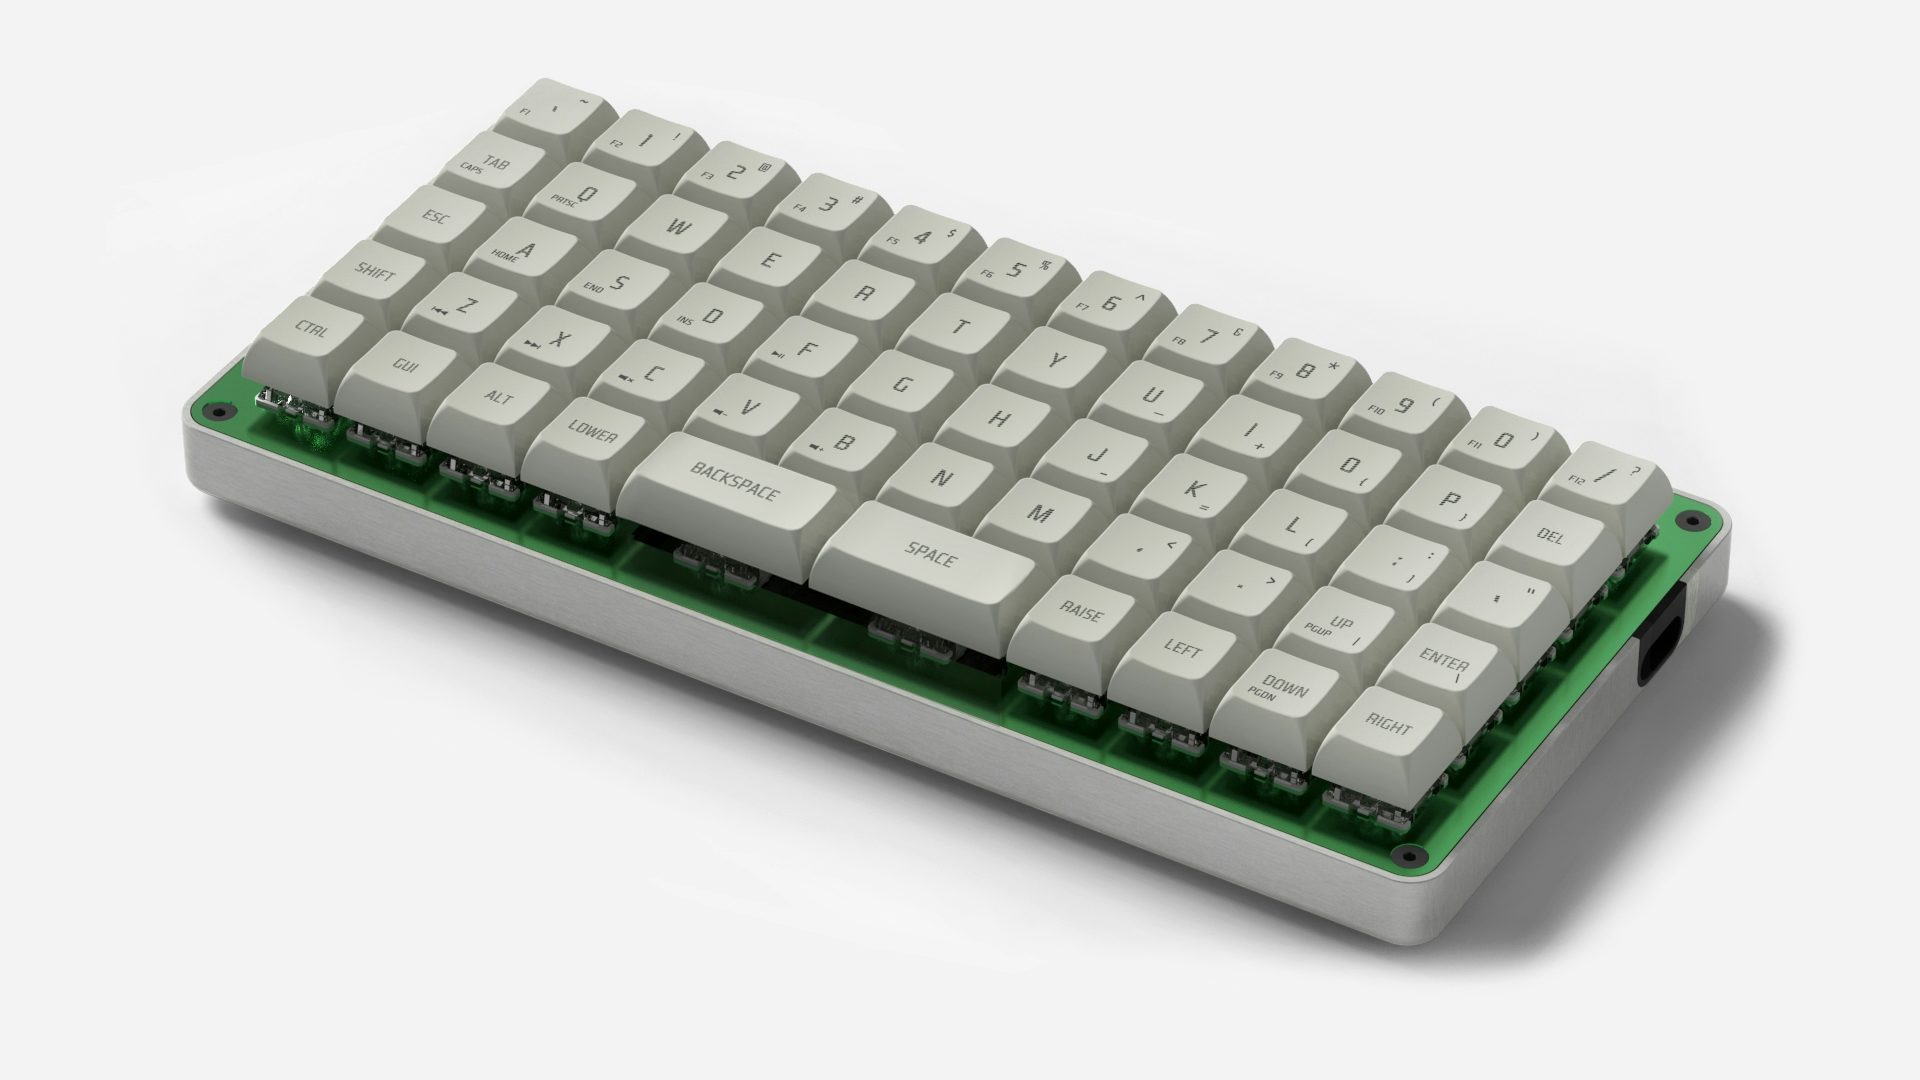 GK6 Keyboard